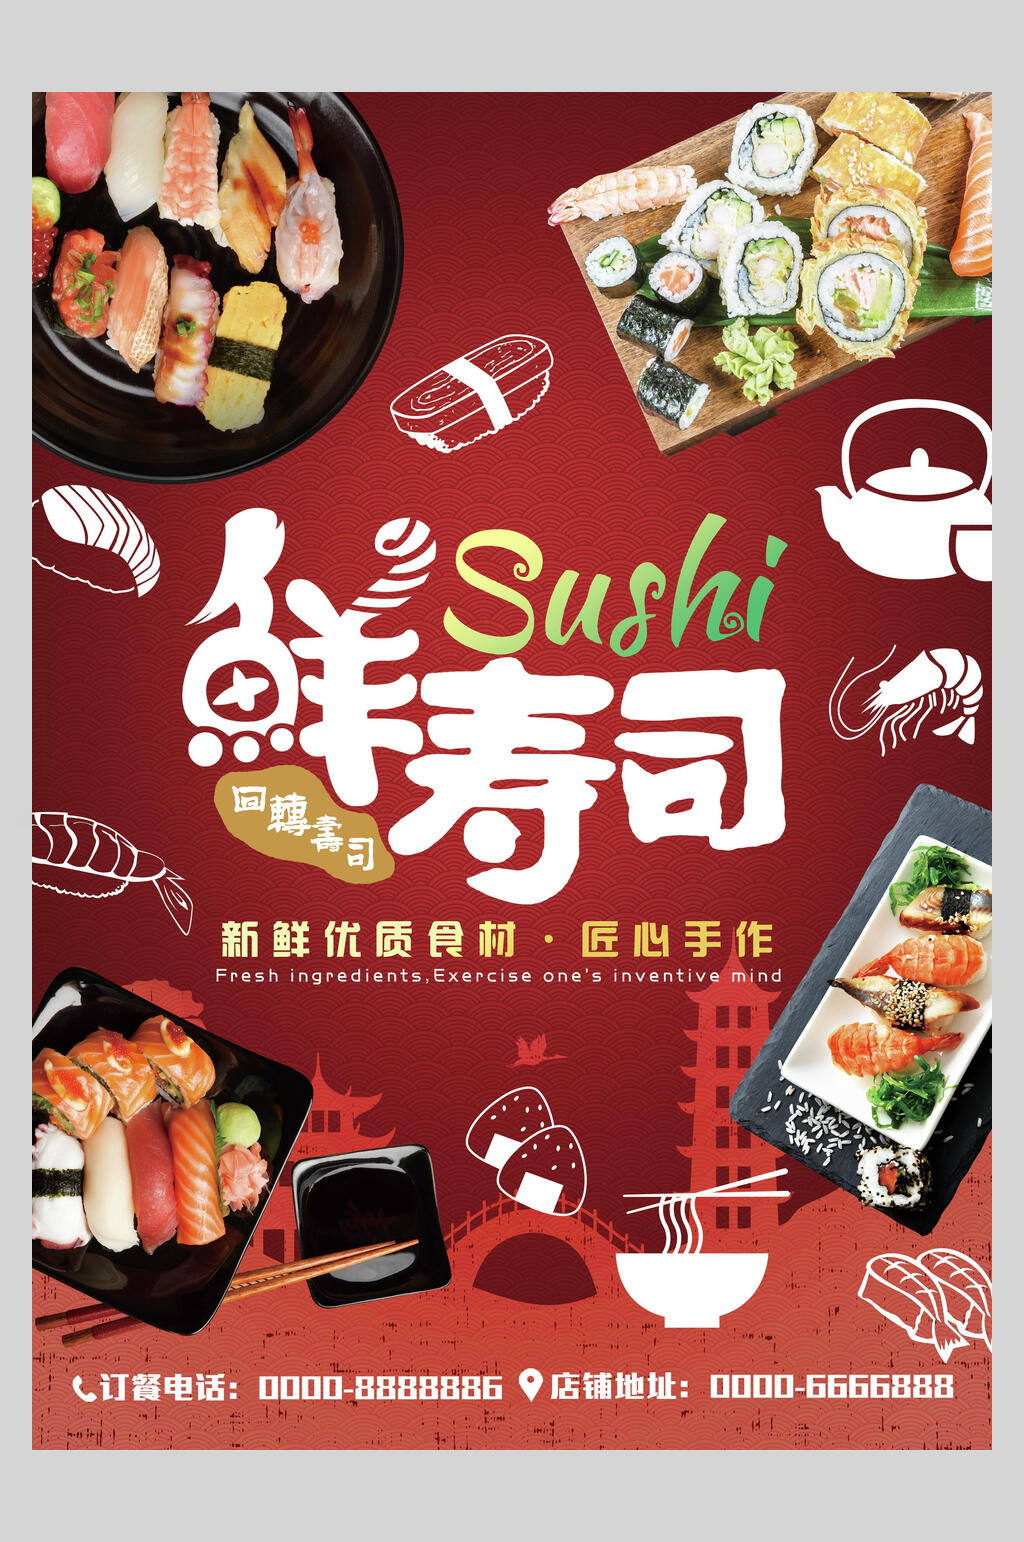 鲜寿司海报设计素材免费下载,本作品是由刘丫上传的原创平面广告素材